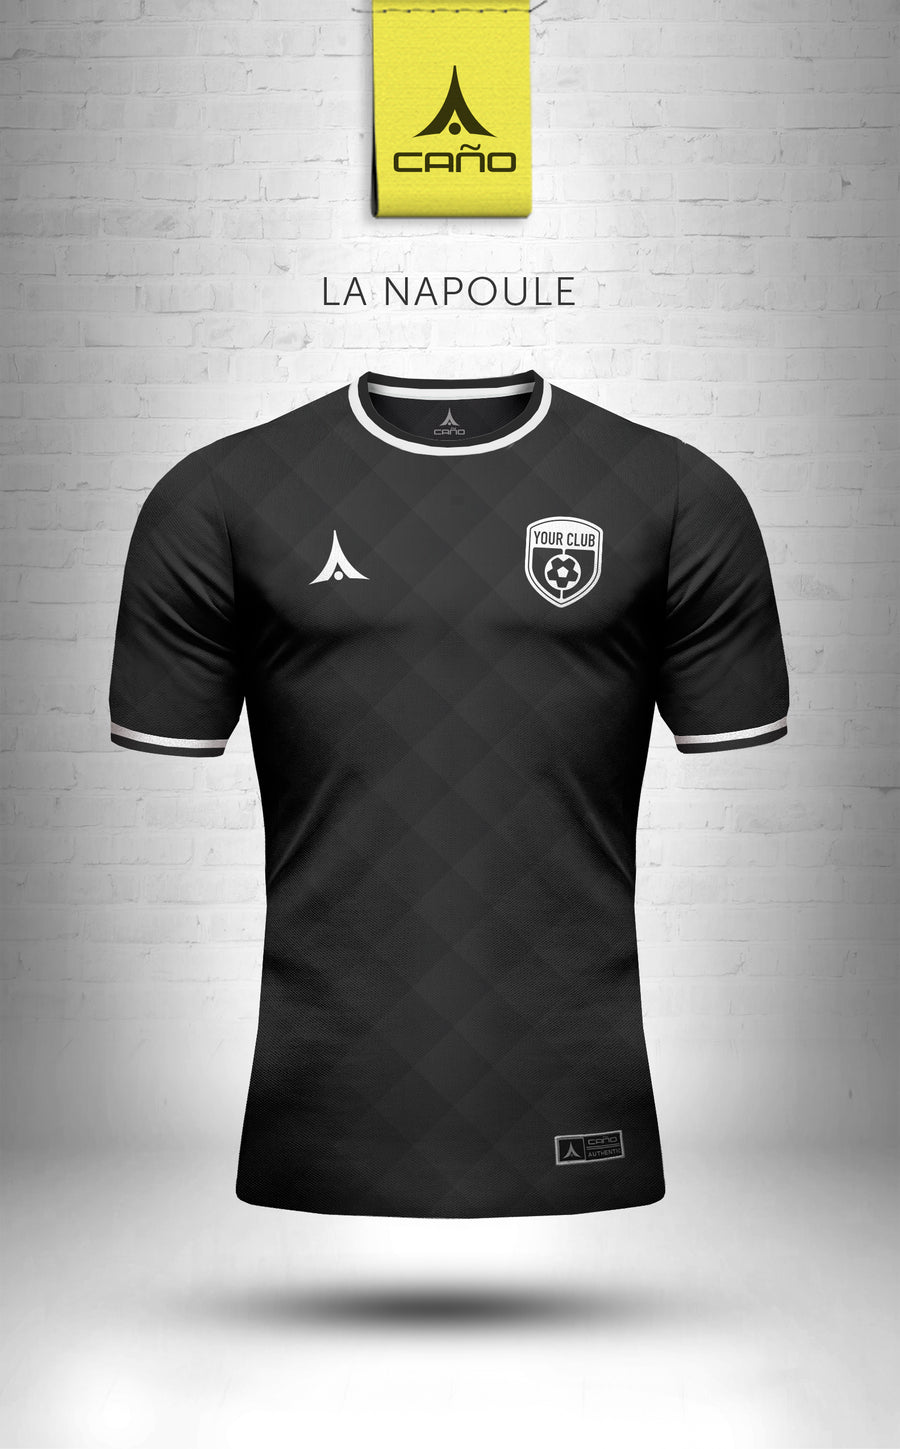 La Napoule in black/white